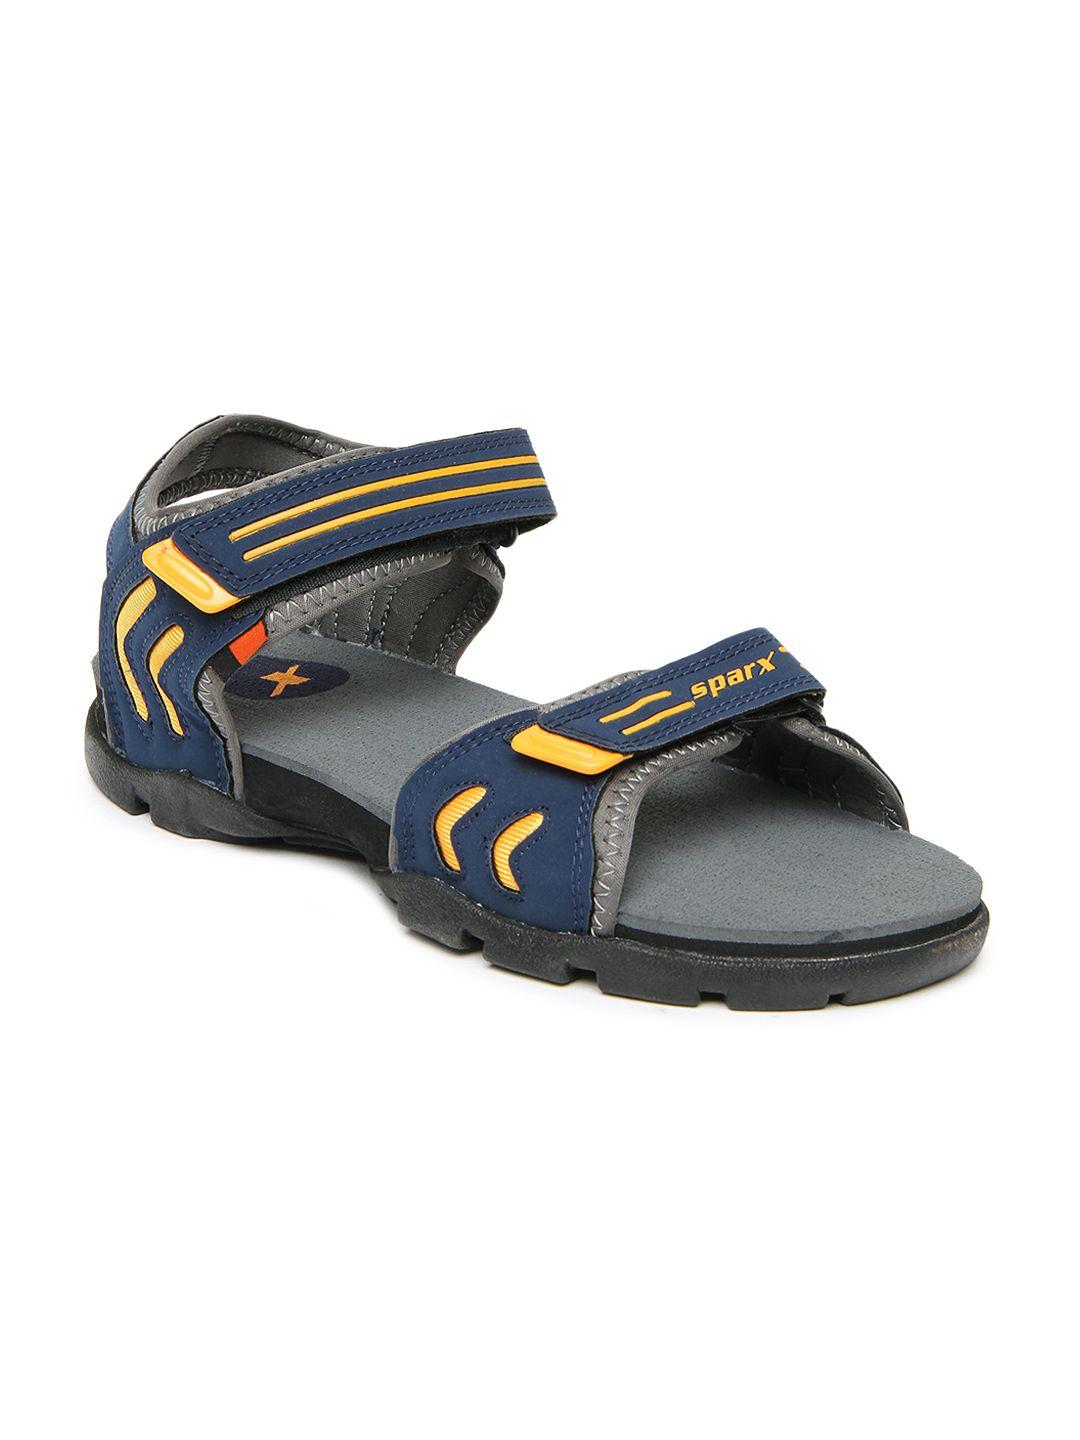 sparx-men-blue-sports-sandals